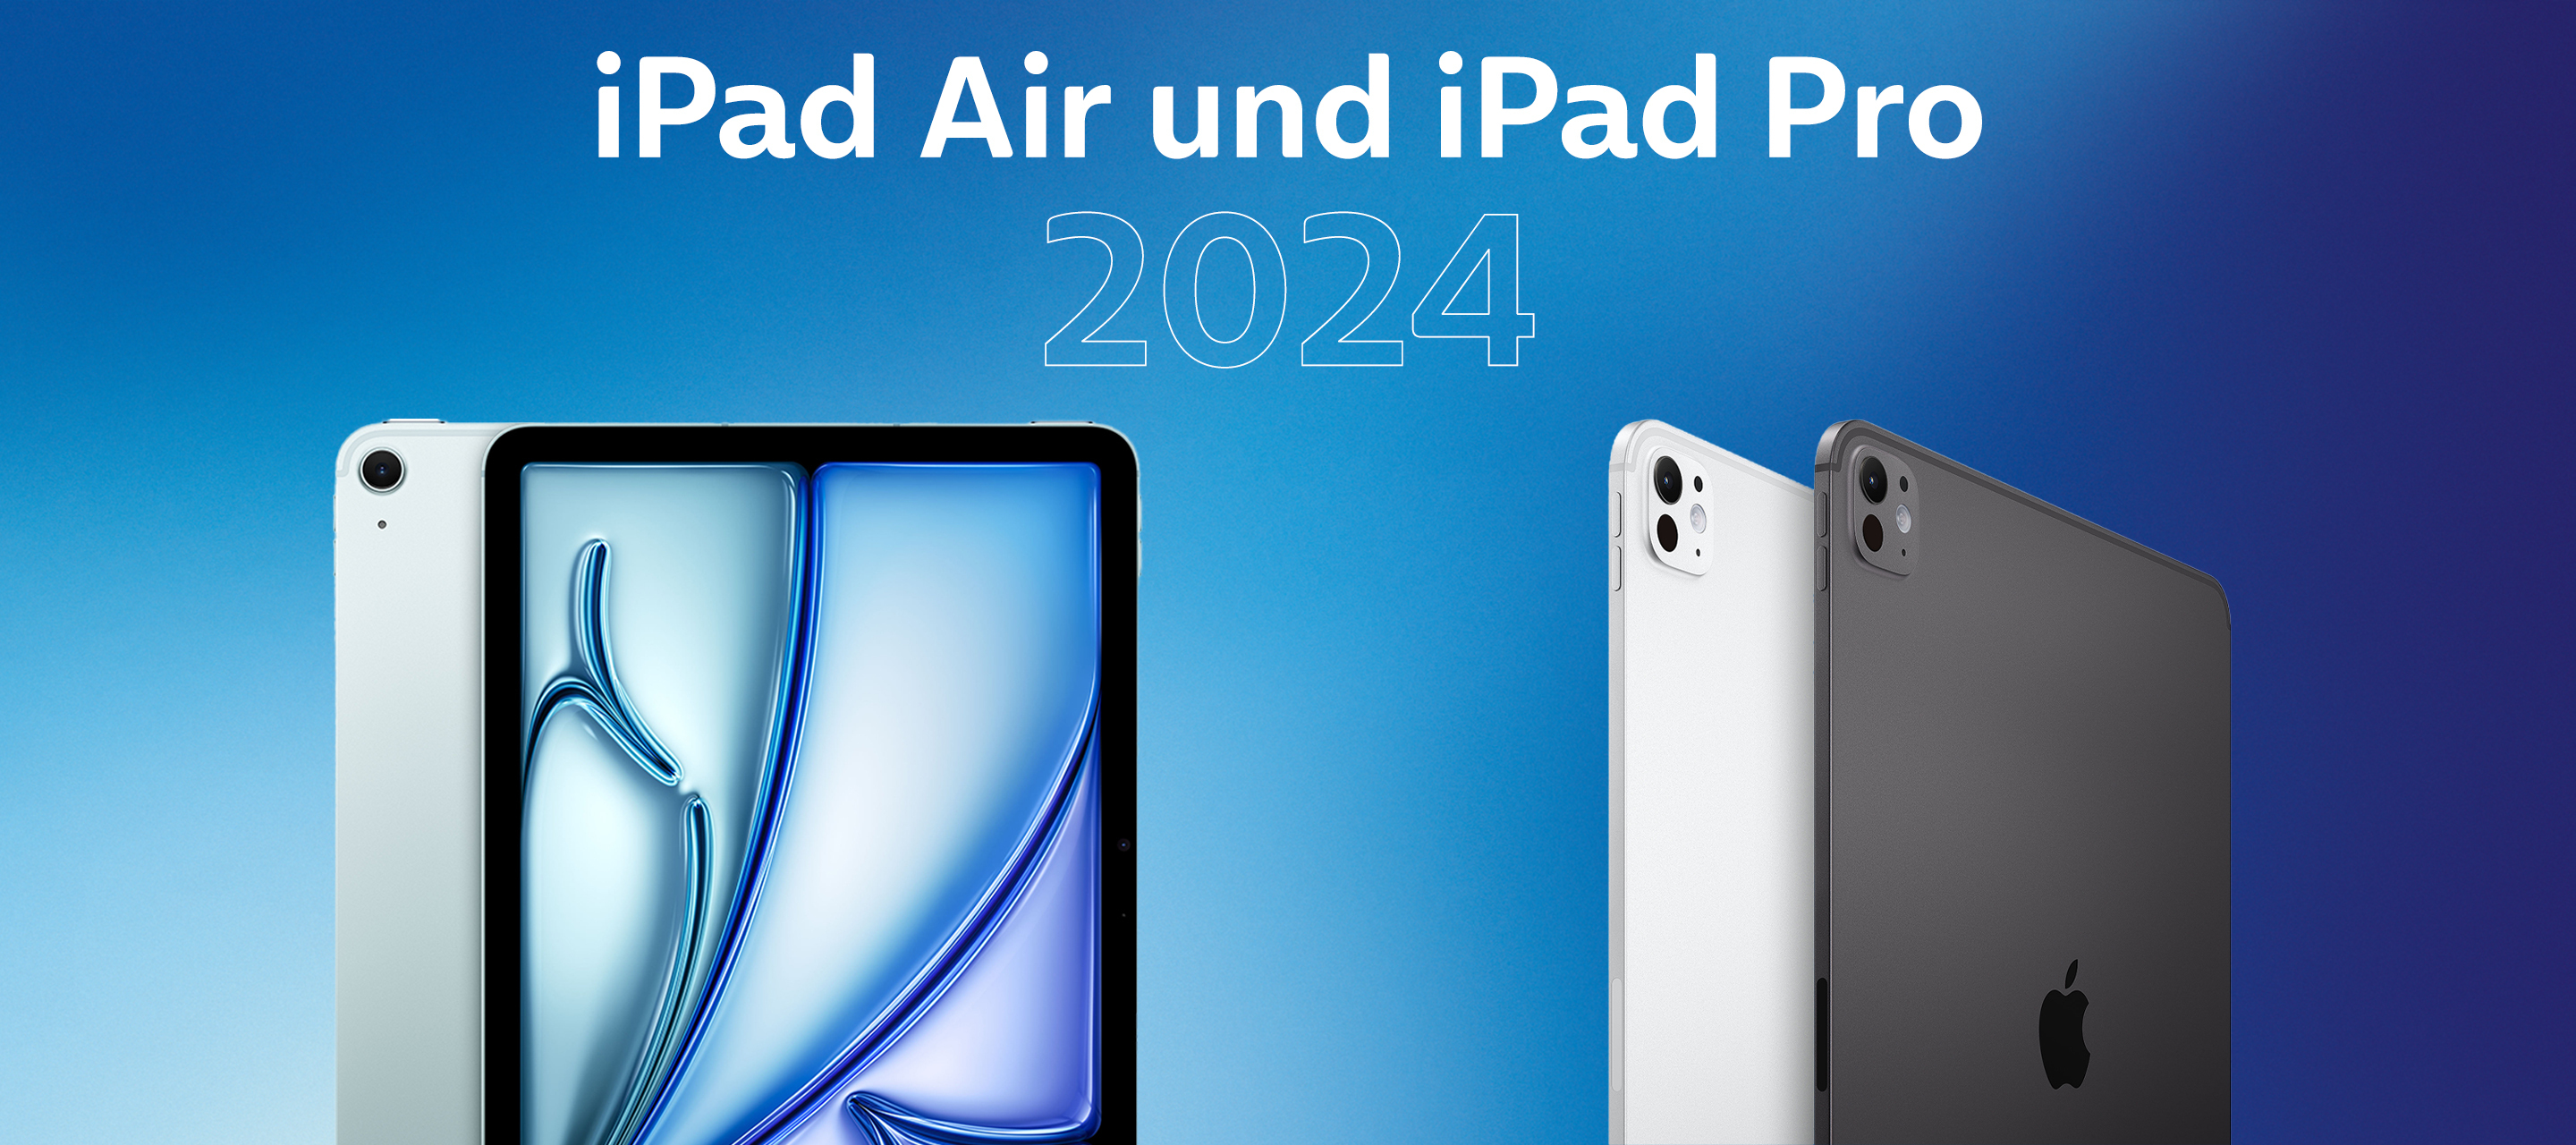 iPad Air und iPad Pro - Die neuen Tablets von Apple bei O₂